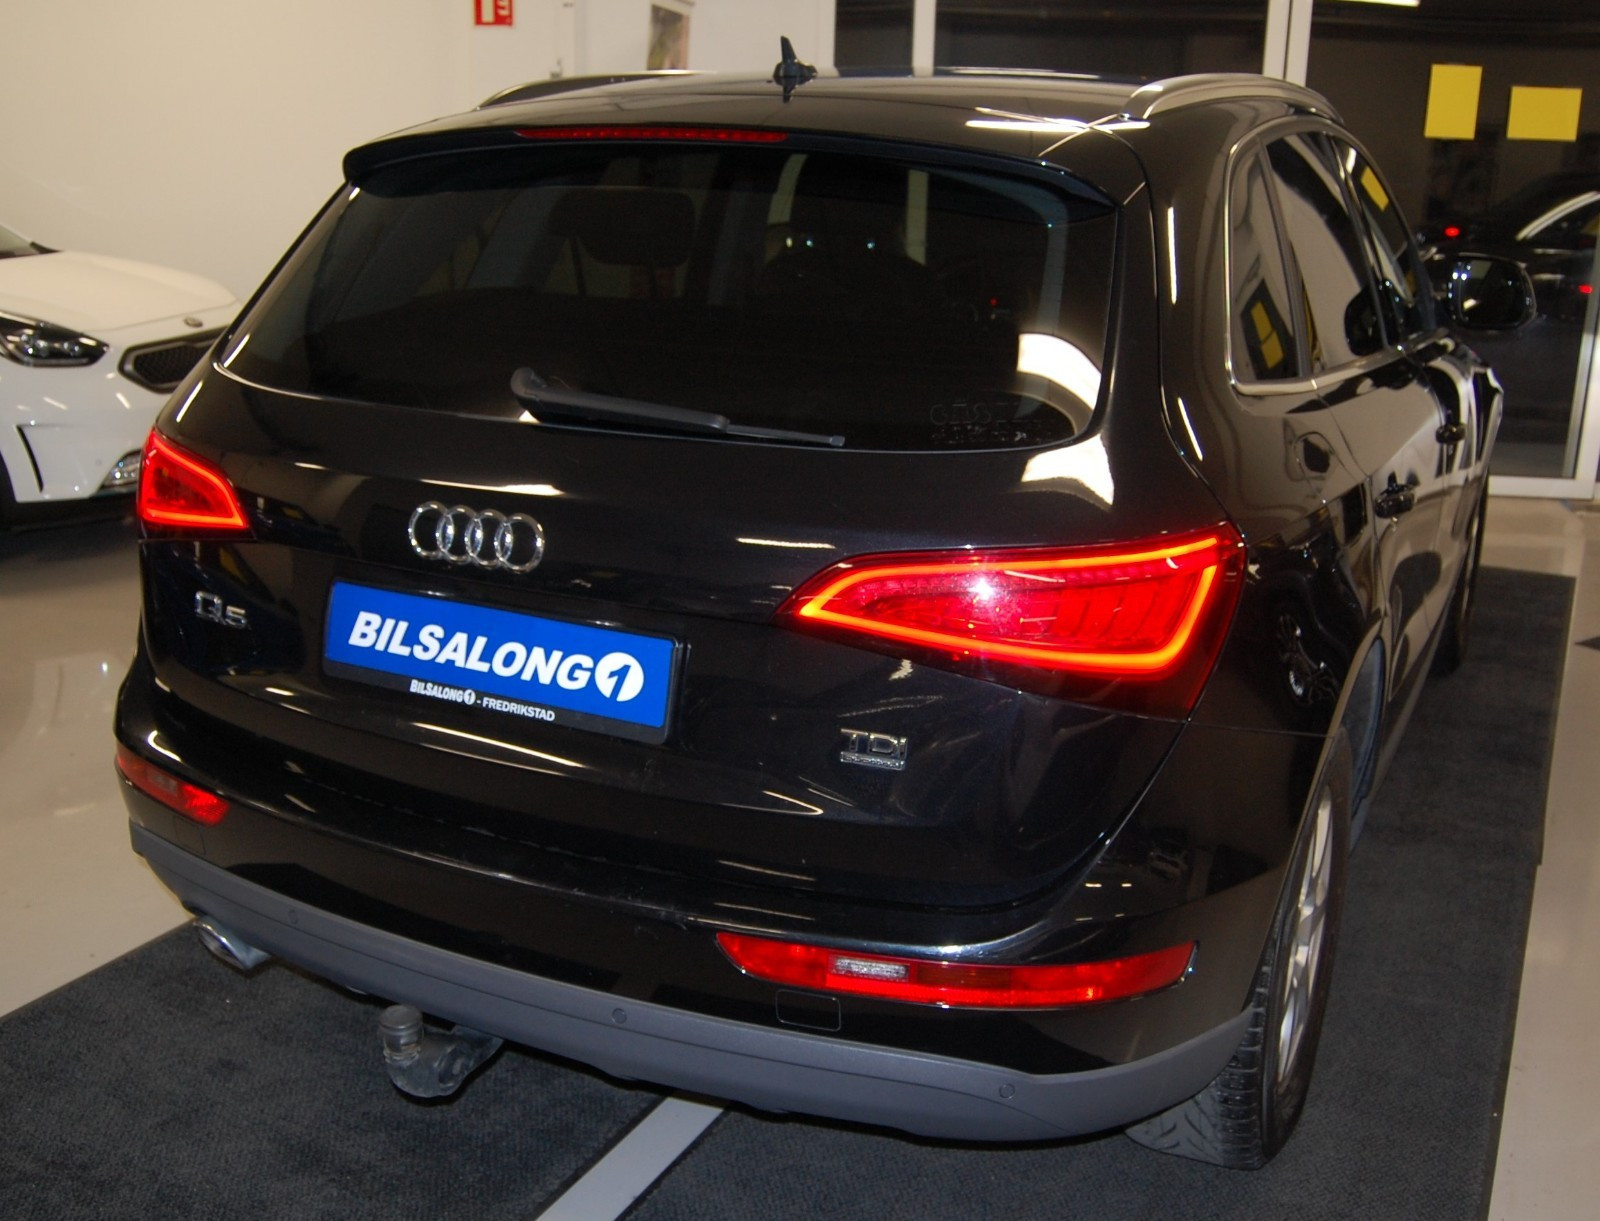 Bilde 11 av Audi Q5